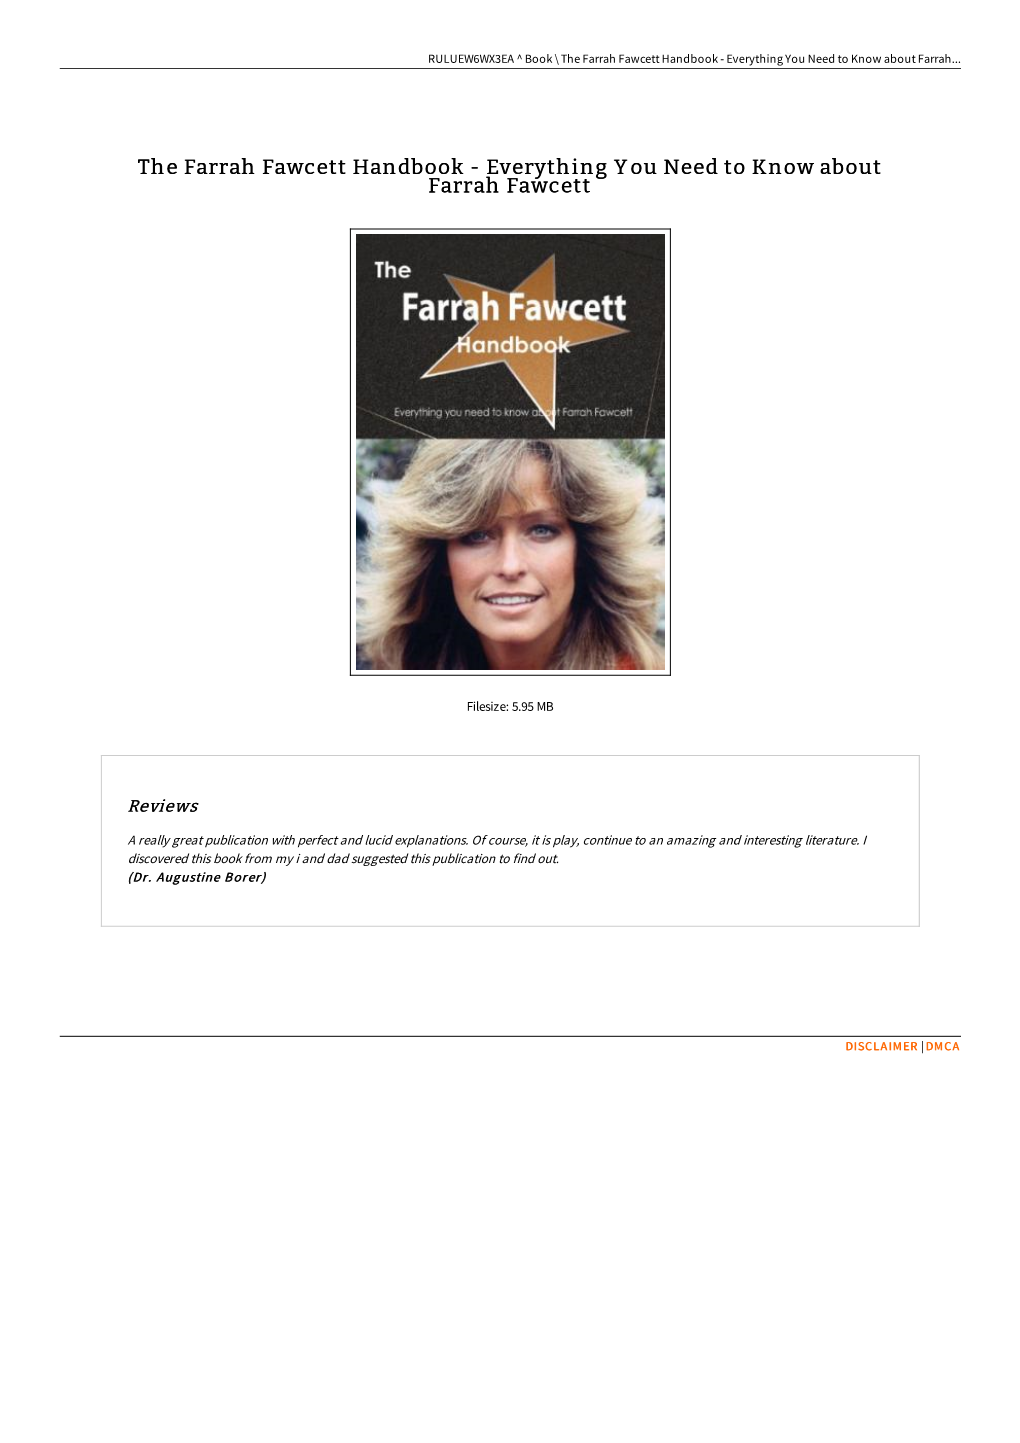 Download Book / the Farrah Fawcett Handbook